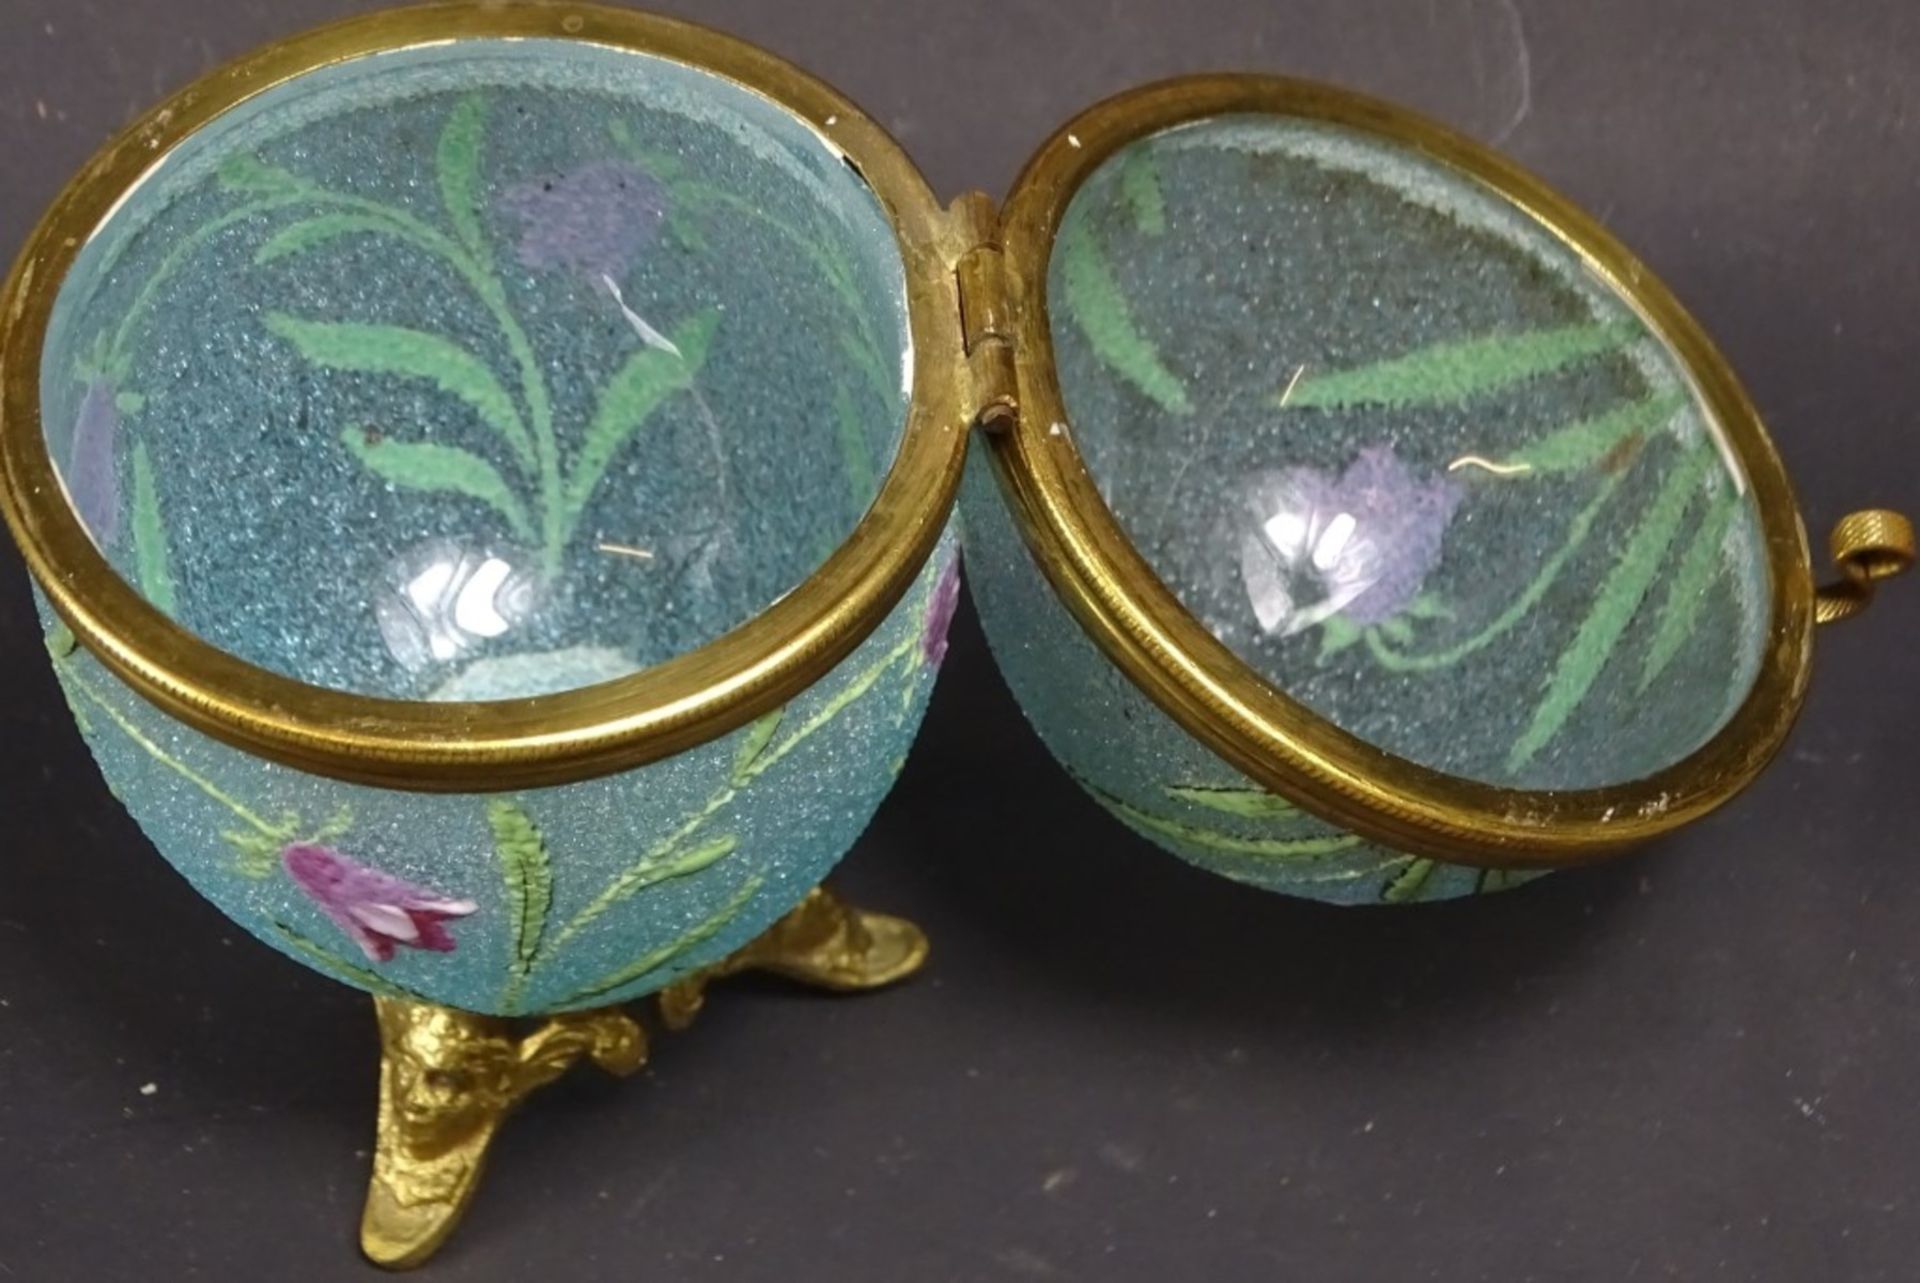 Eiförmige Dose aus bemaltem Eisglas mit Bronzemontur, H. 10,5 cm, leichte Altersspuren vorhanden - Image 6 of 6